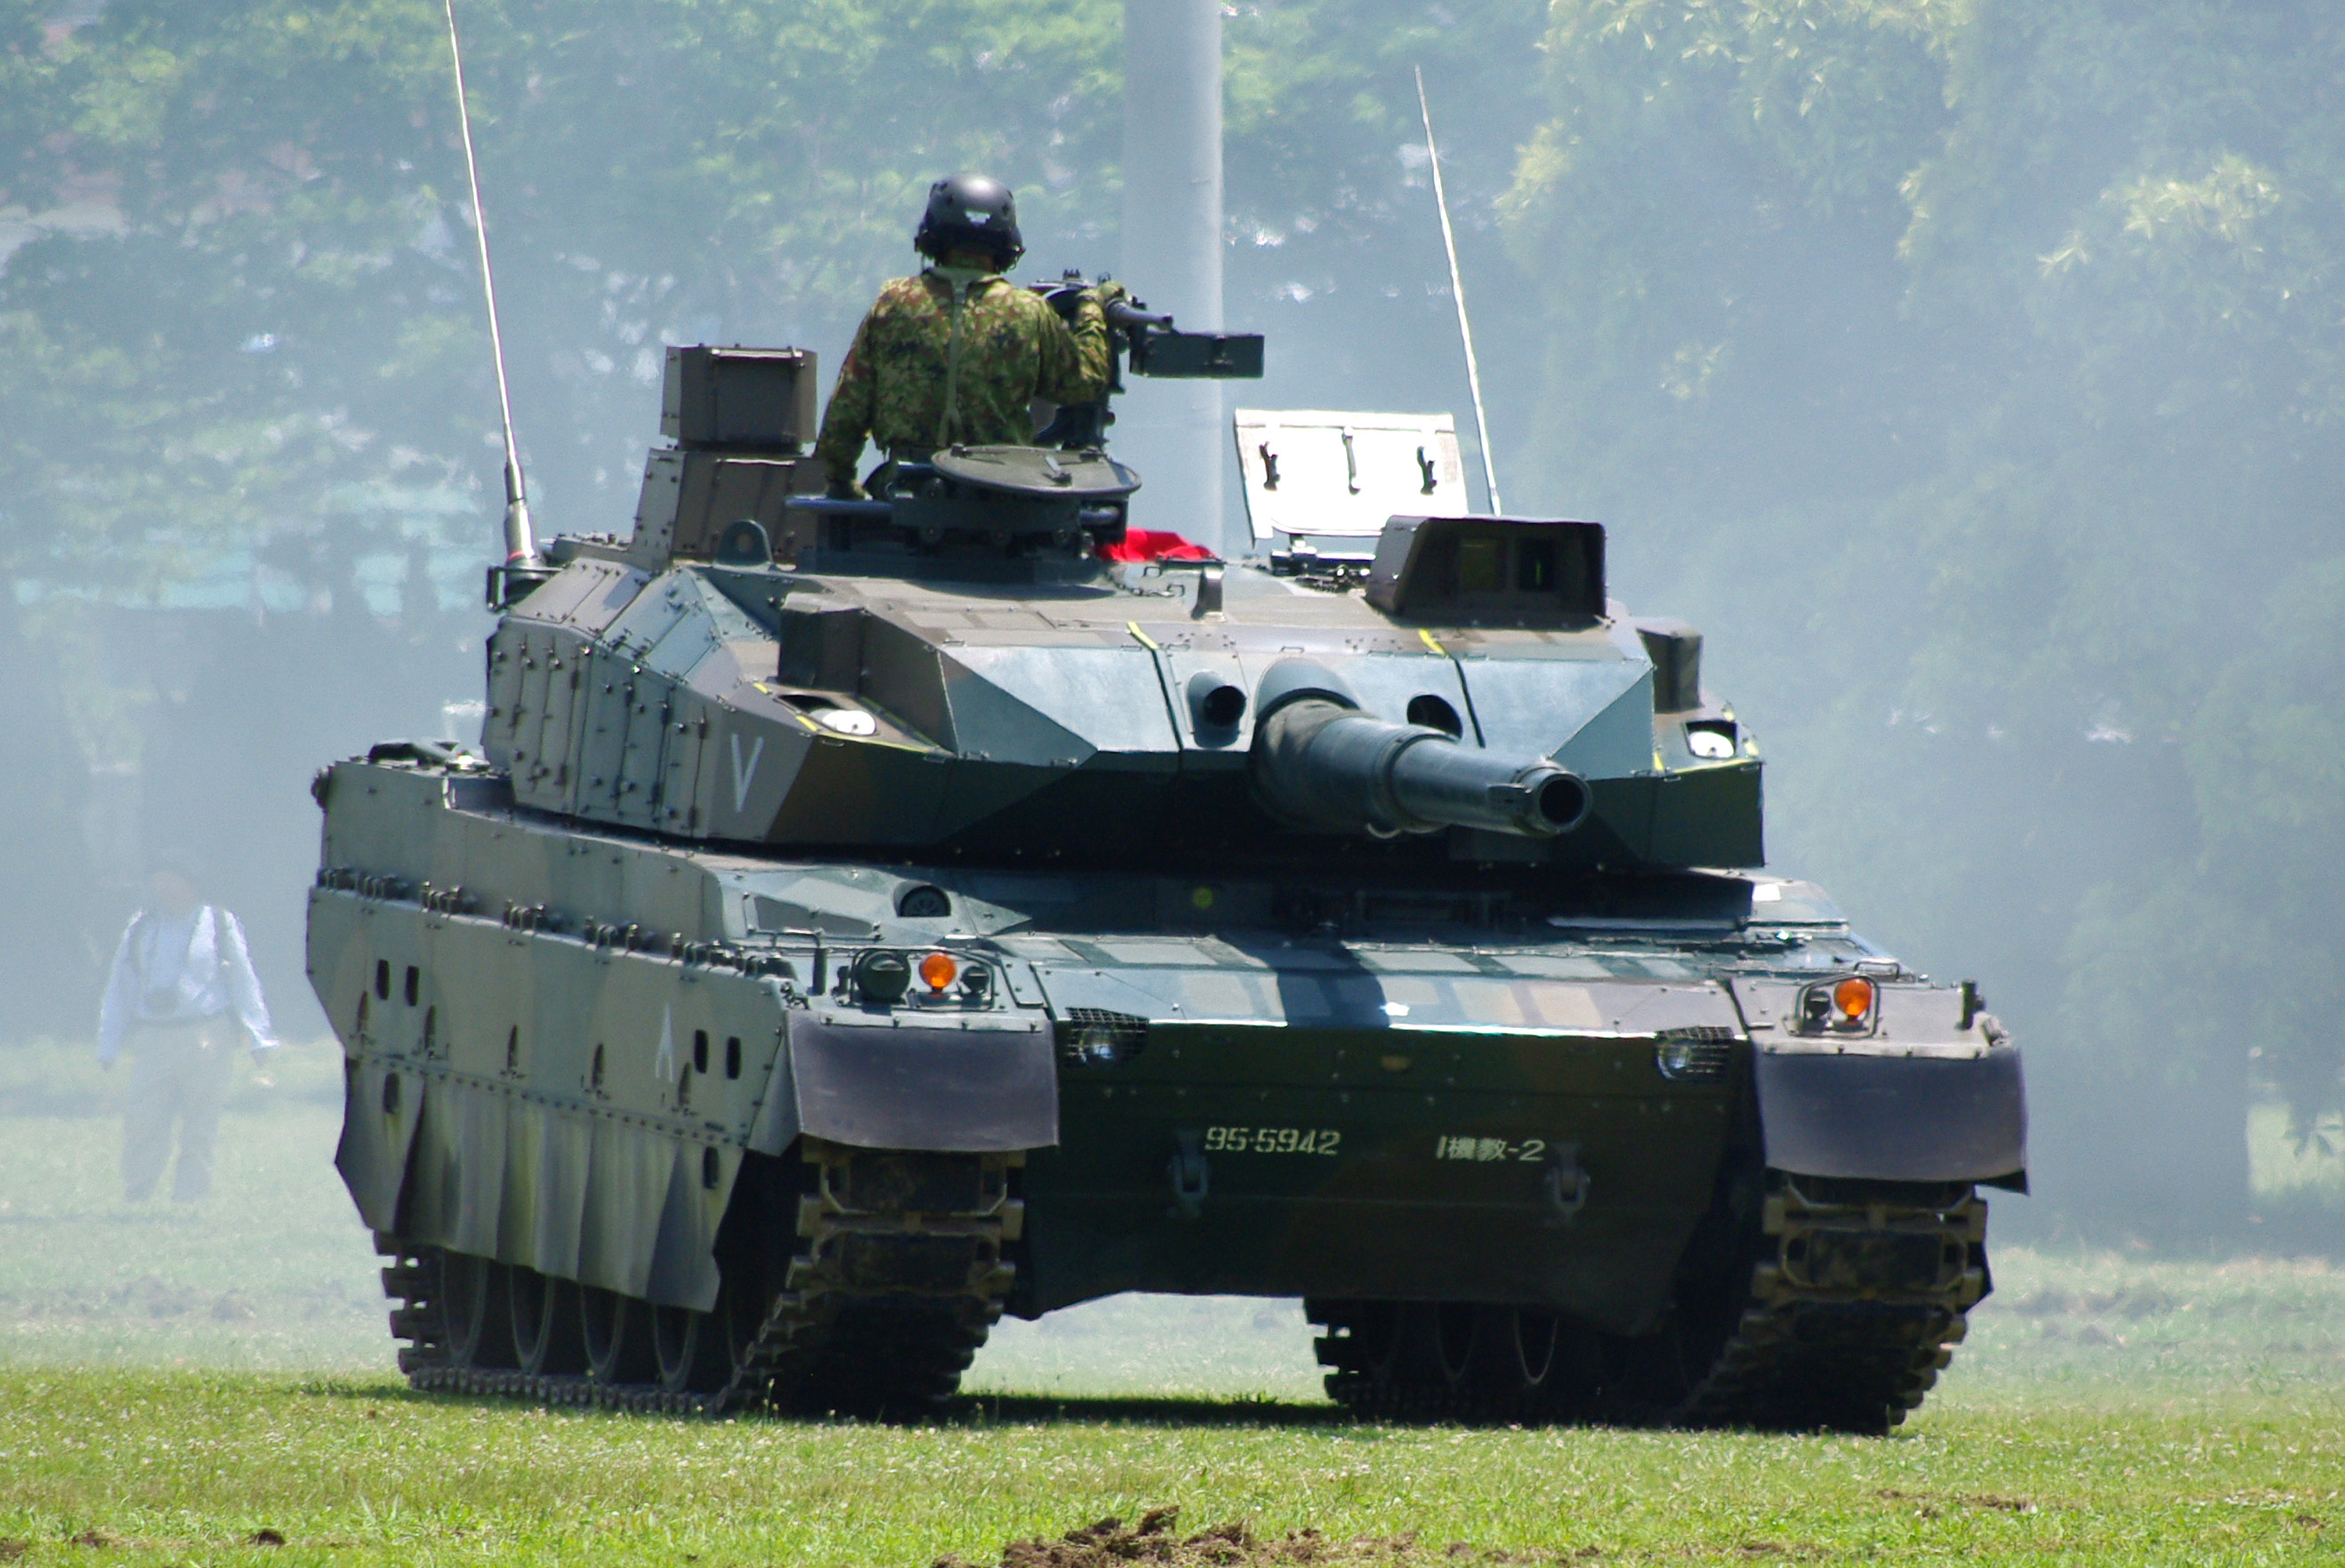 Xe tăng Type-10 được đánh giá là xe tăng số 1 Nhật Bản với nhiều trang bị vũ khí hiện đại